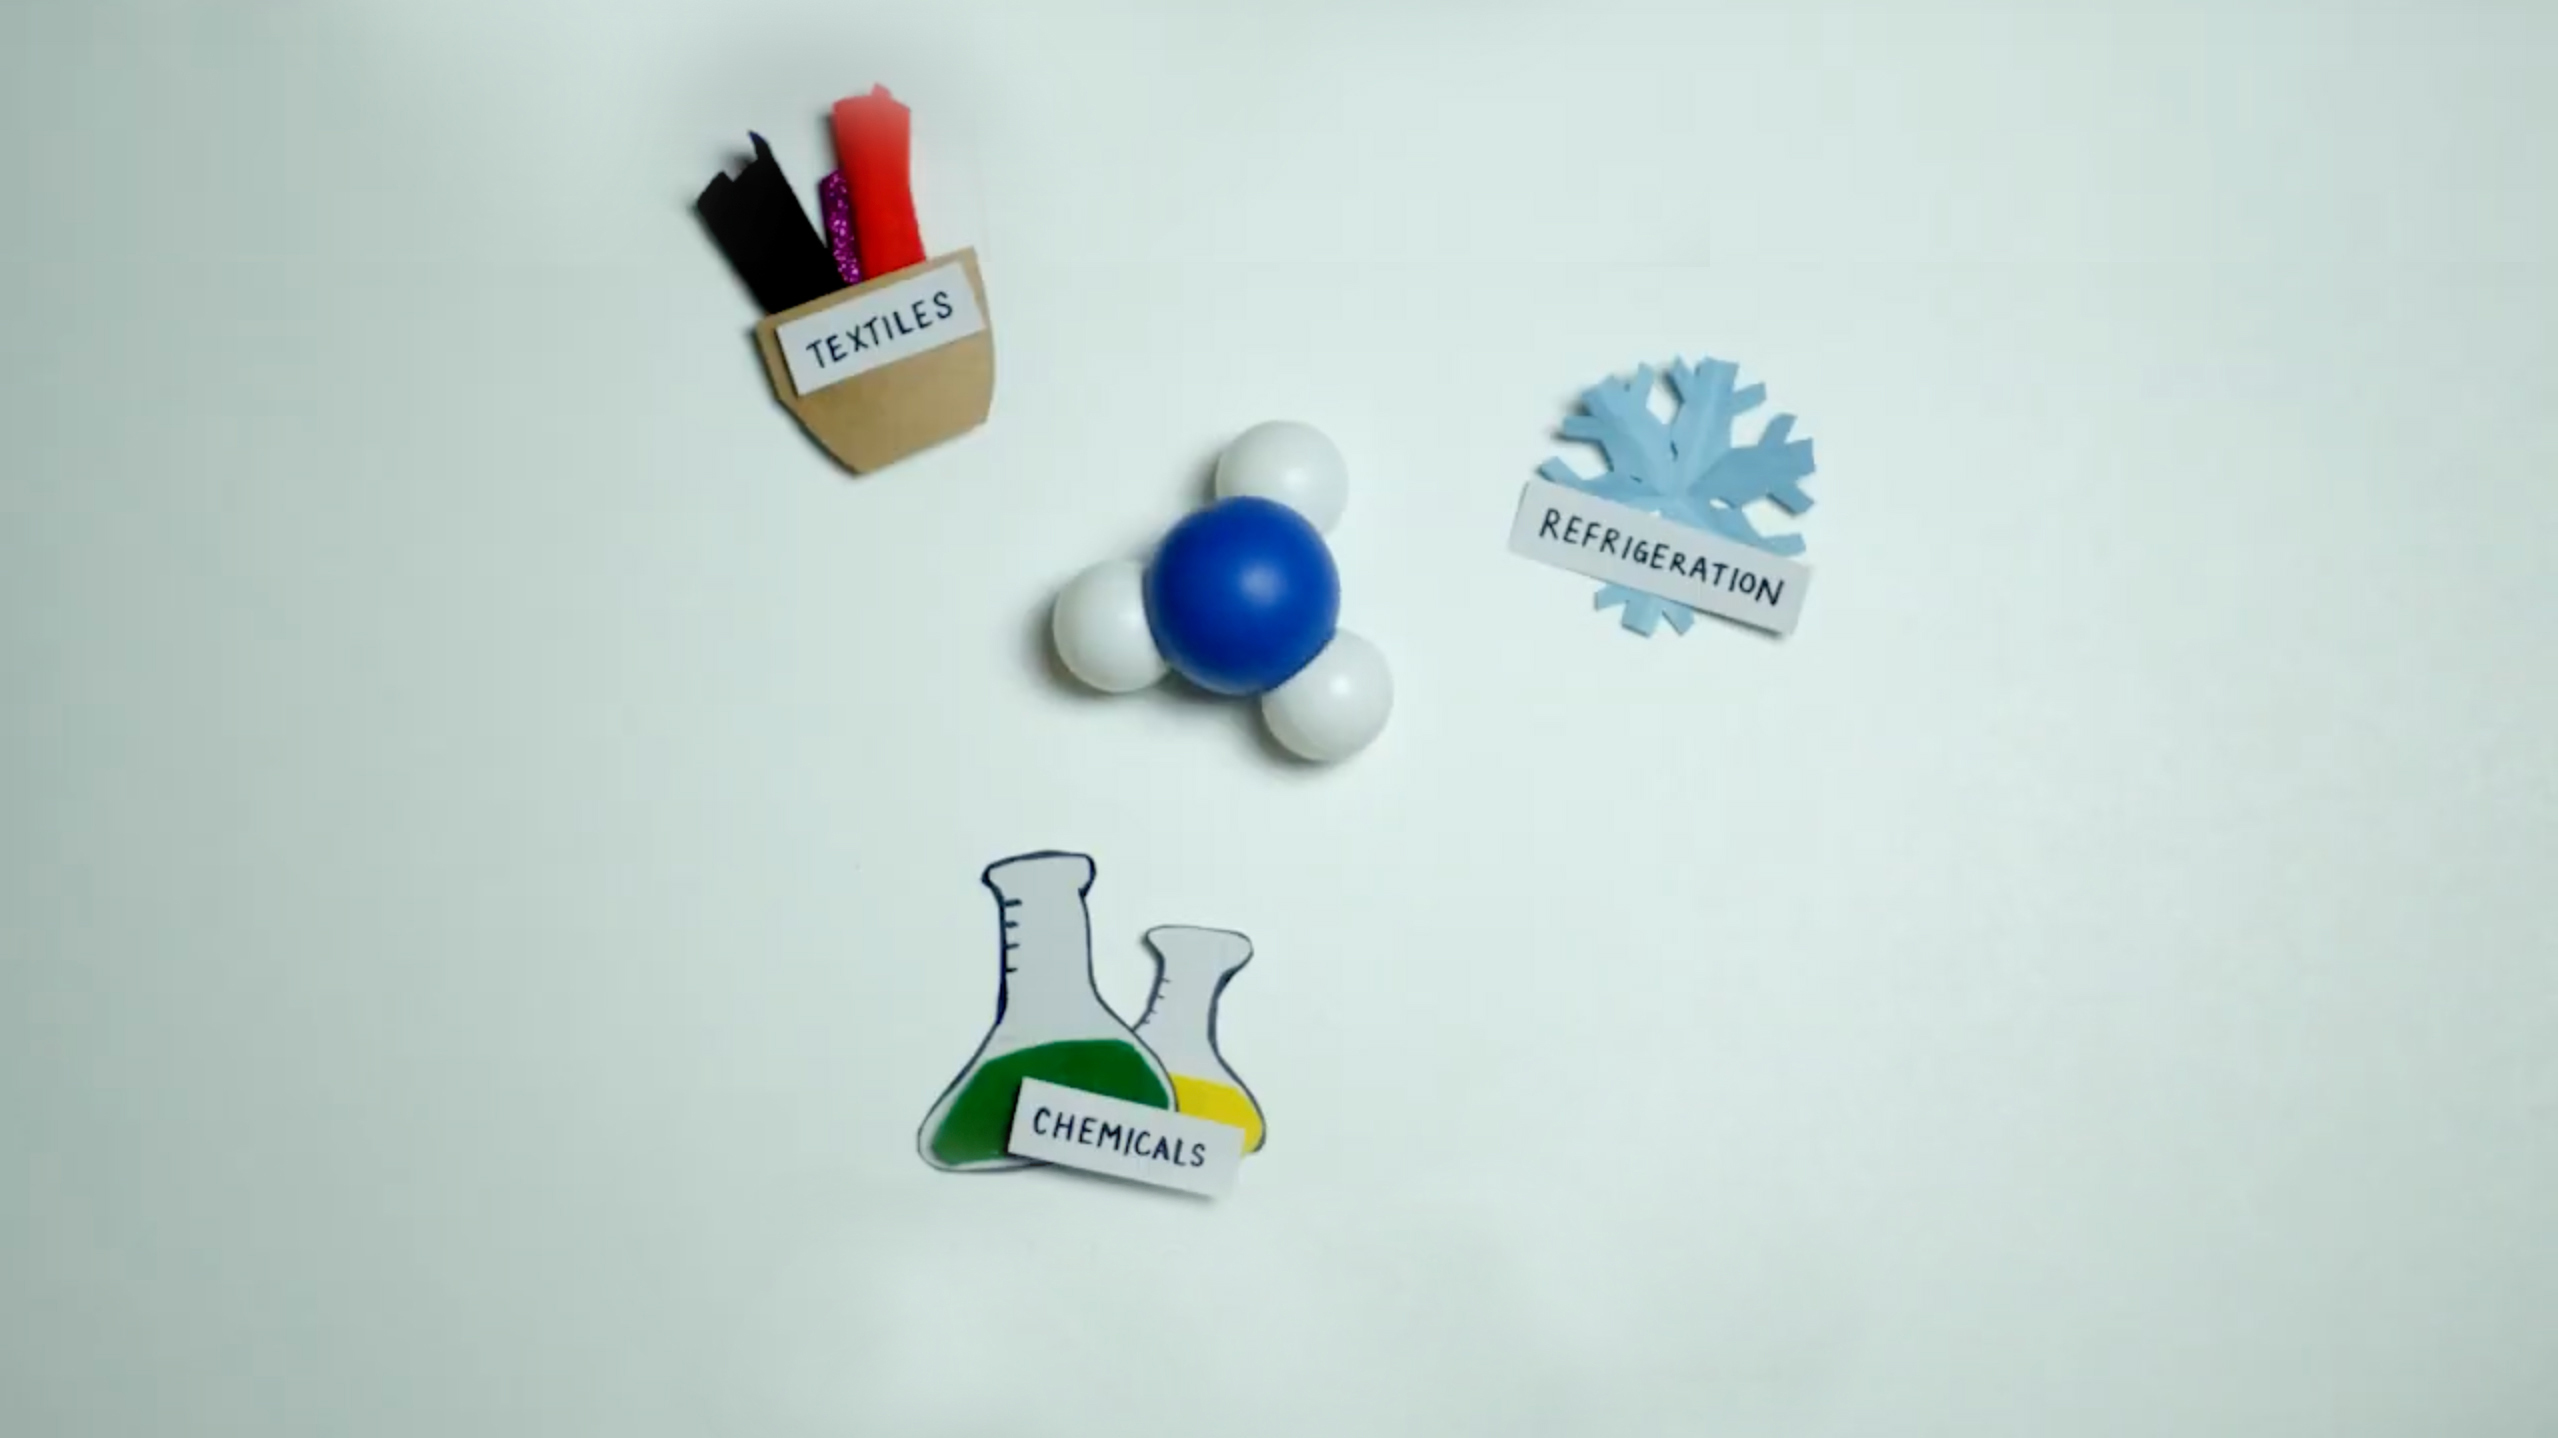 Quatre objets bricolés posés sur une table : une molécule d'ammoniac entourée d'éprouvettes pour représenter les produits chimiques, trois rouleaux de feutre représentant les textiles et un flocon de neige représentant la réfrigération.